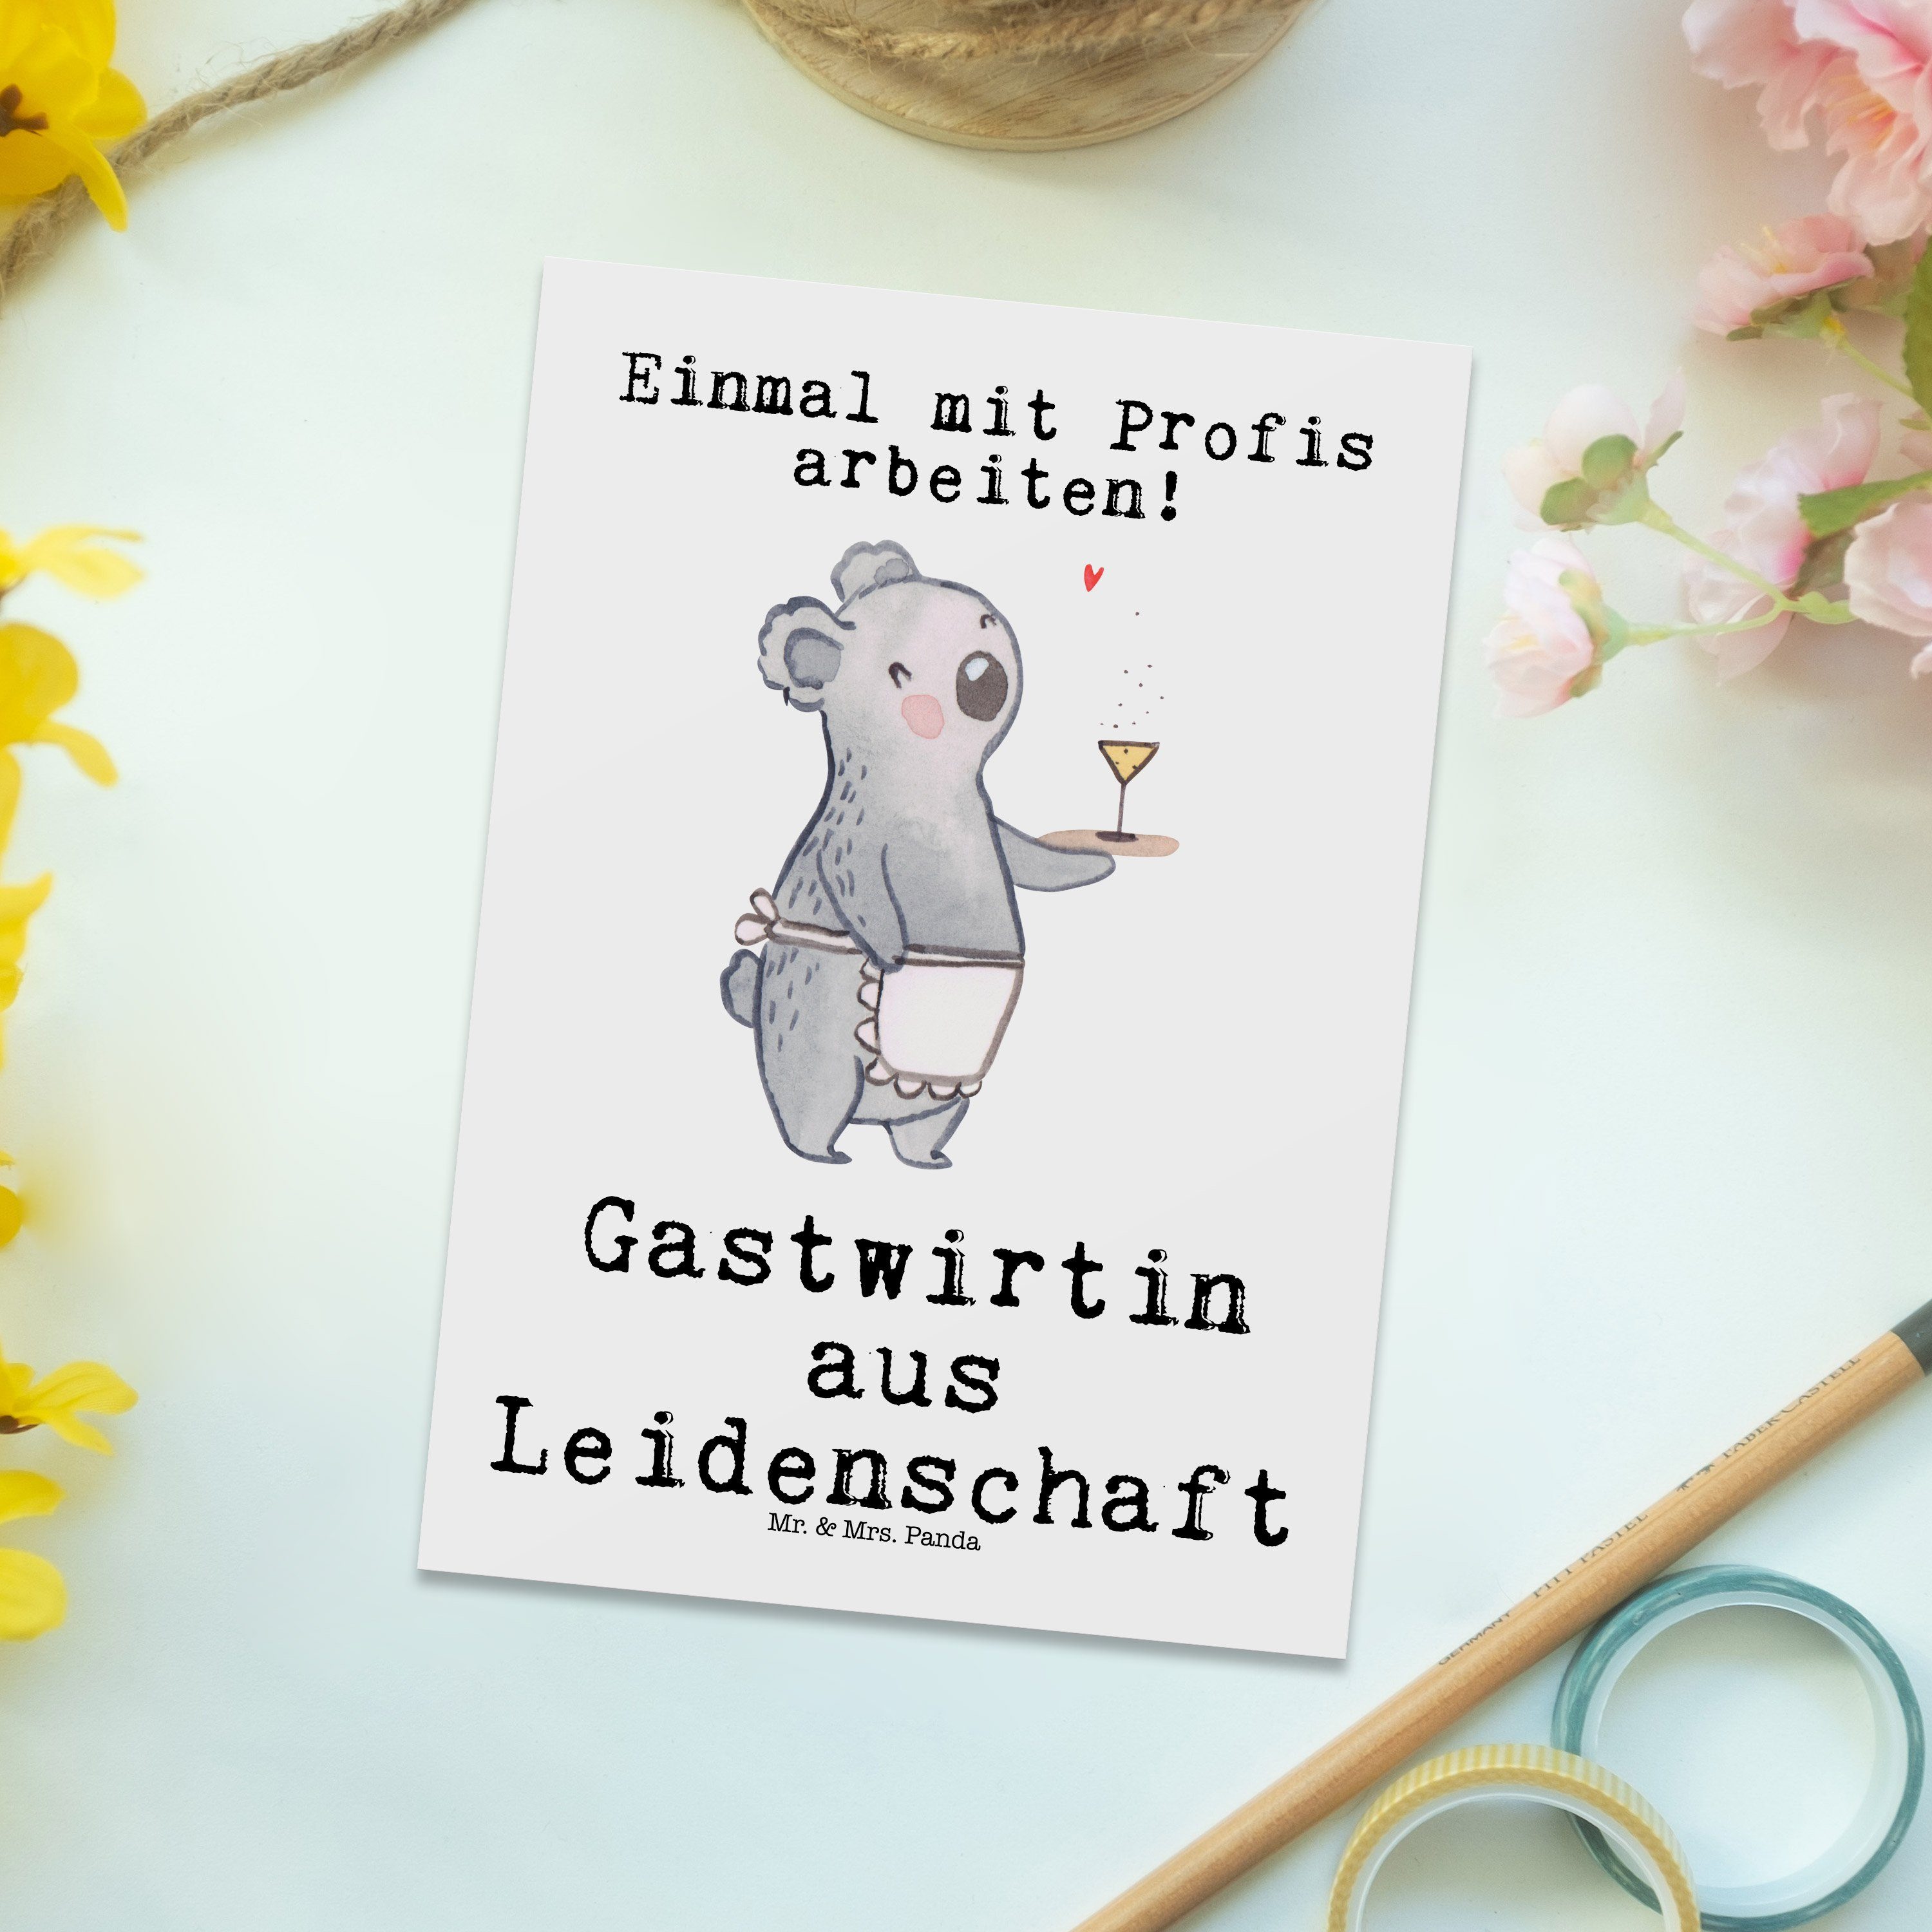 Mr. & Leidenschaft cheers, Panda Weiß Schenk - aus Kneipe, - Geschenk, Gastwirtin Mrs. Postkarte